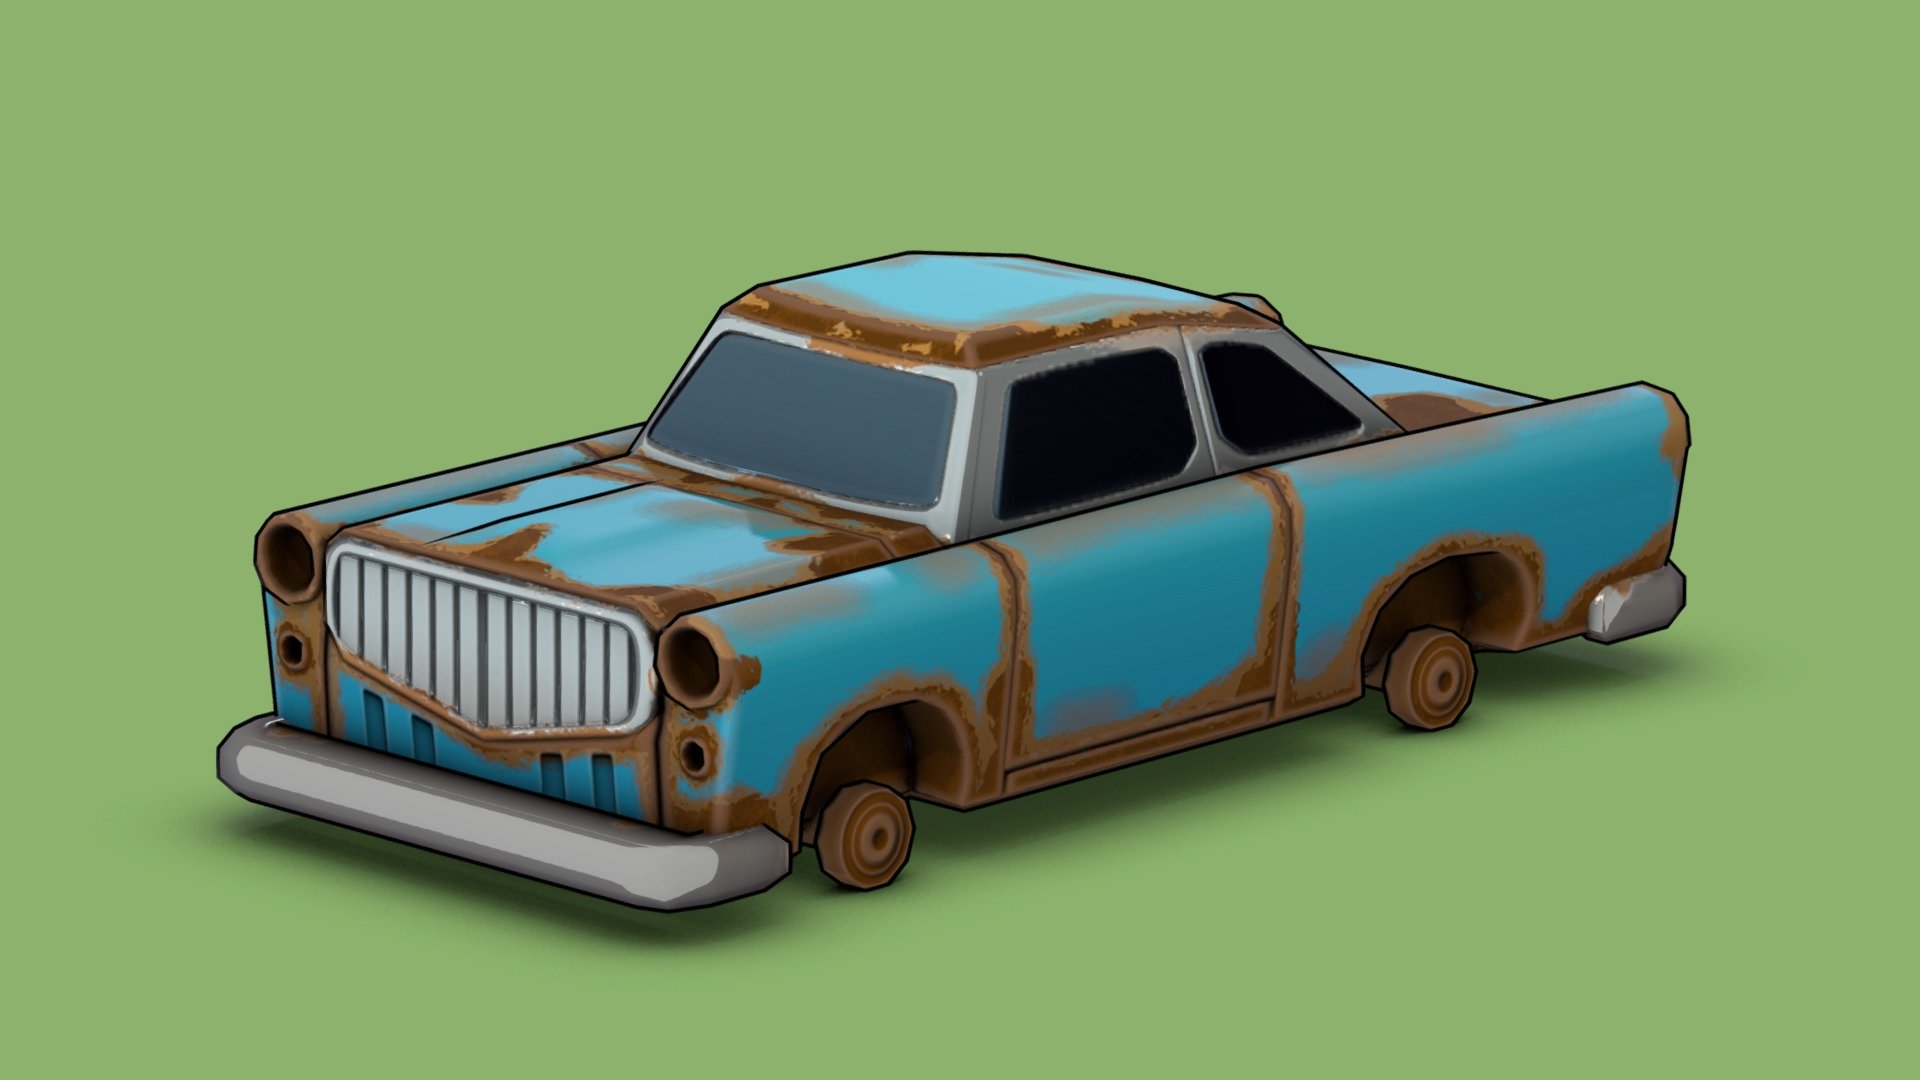 Toy car rust фото 49